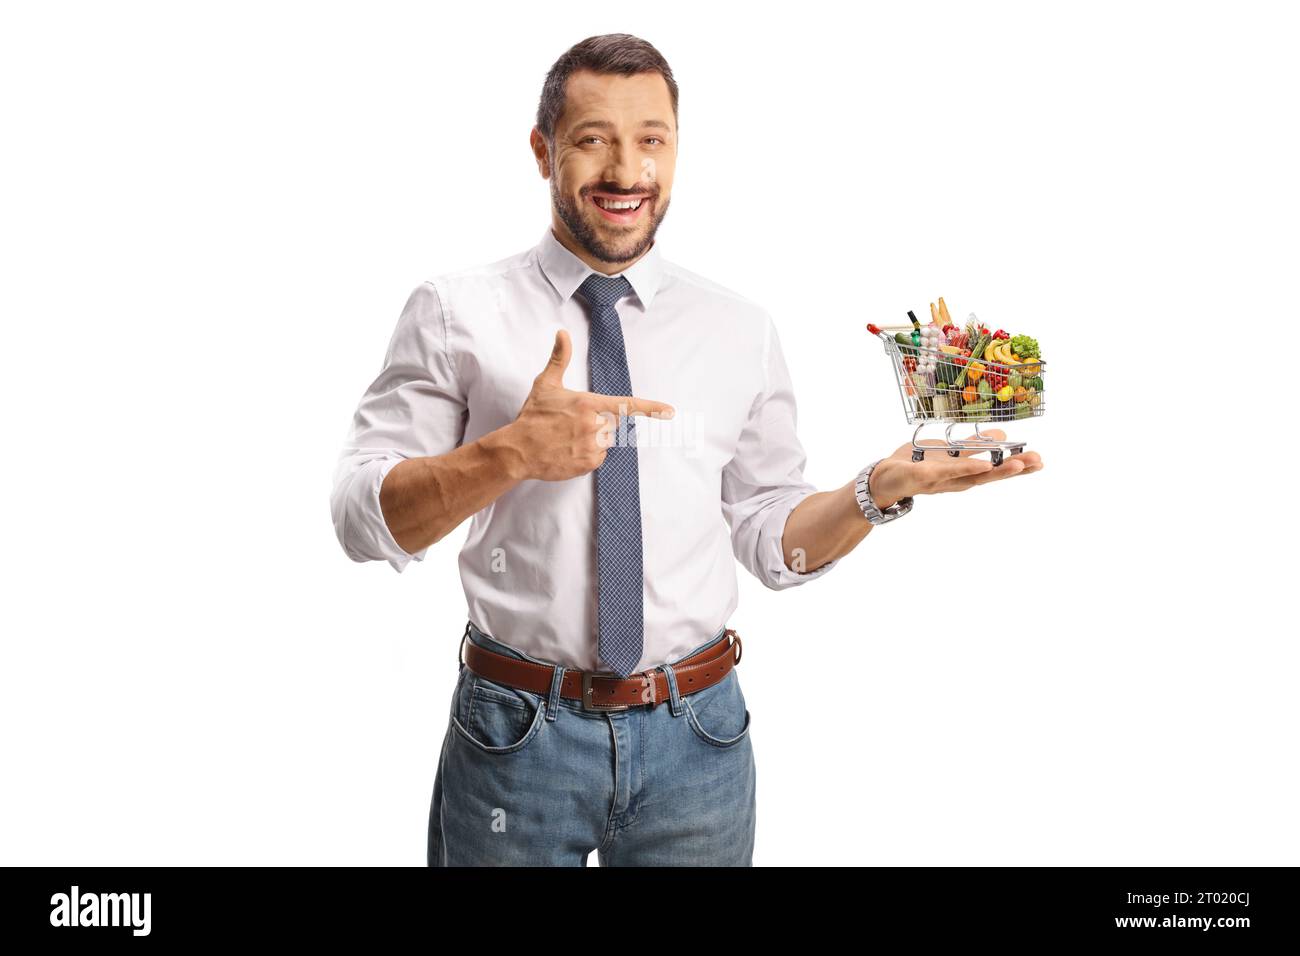 Junger lächelnder Mann, der einen Mini-Einkaufswagen mit Essen hält und isoliert auf weißem Hintergrund zeigt Stockfoto